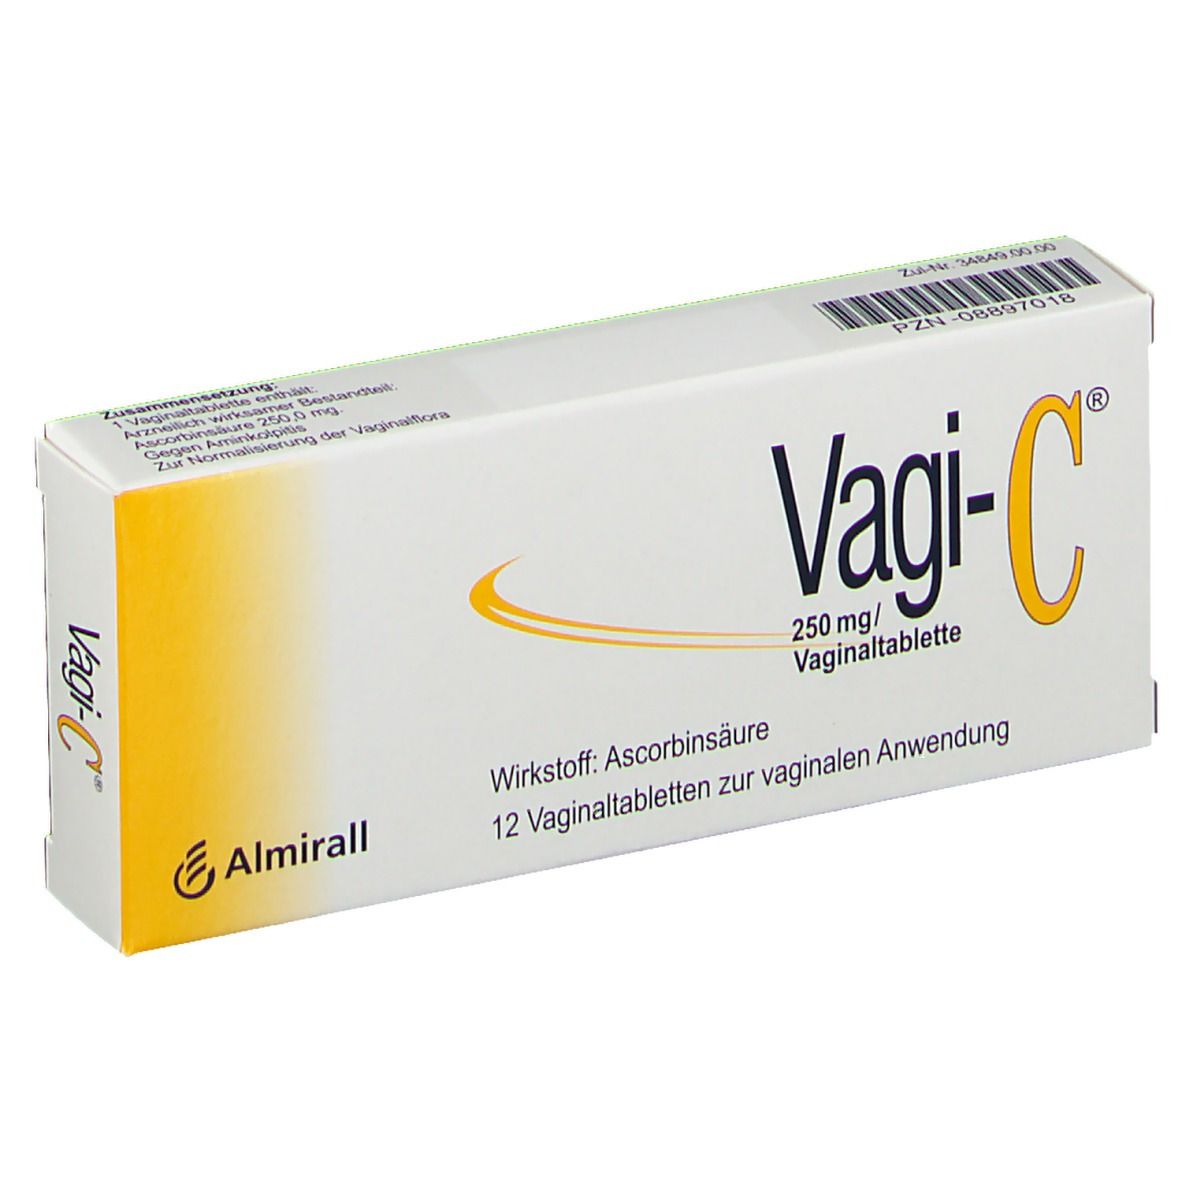 Vagi-C® Vaginaltabletten